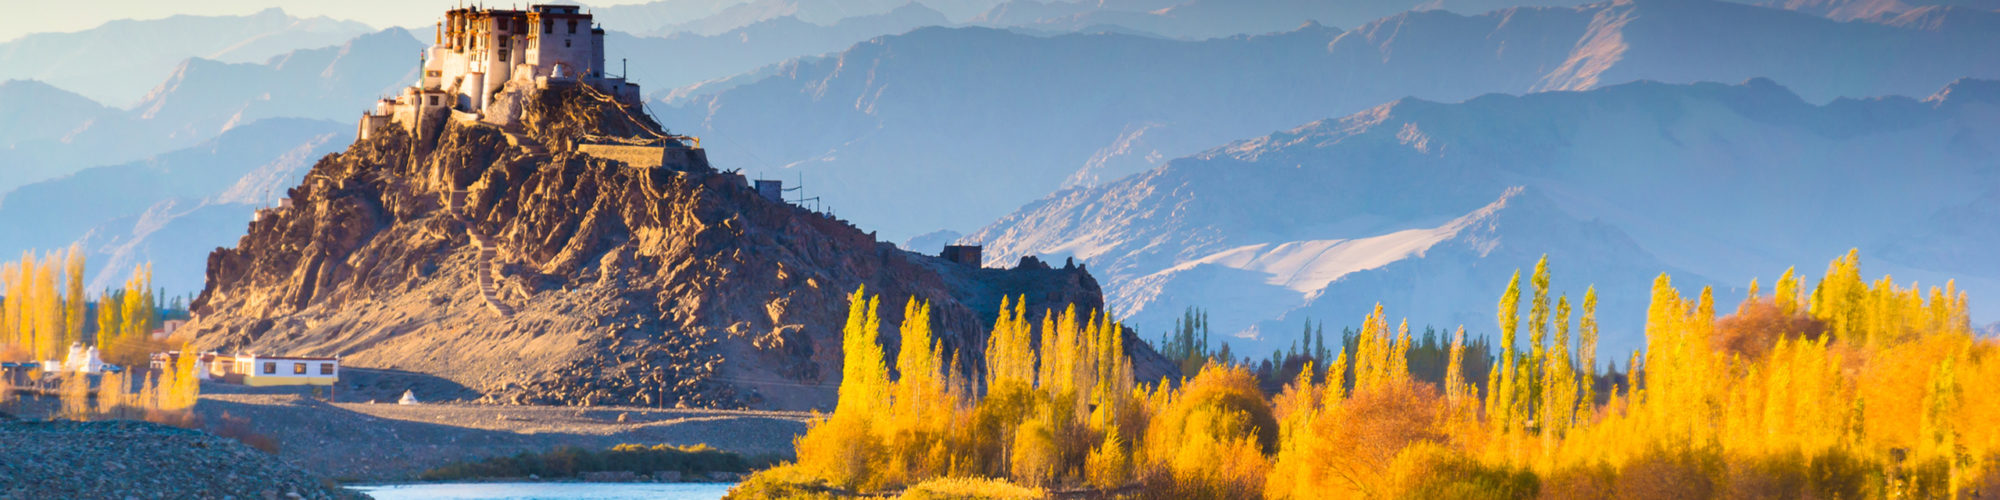 Ladakh Travel travel agents packages deals